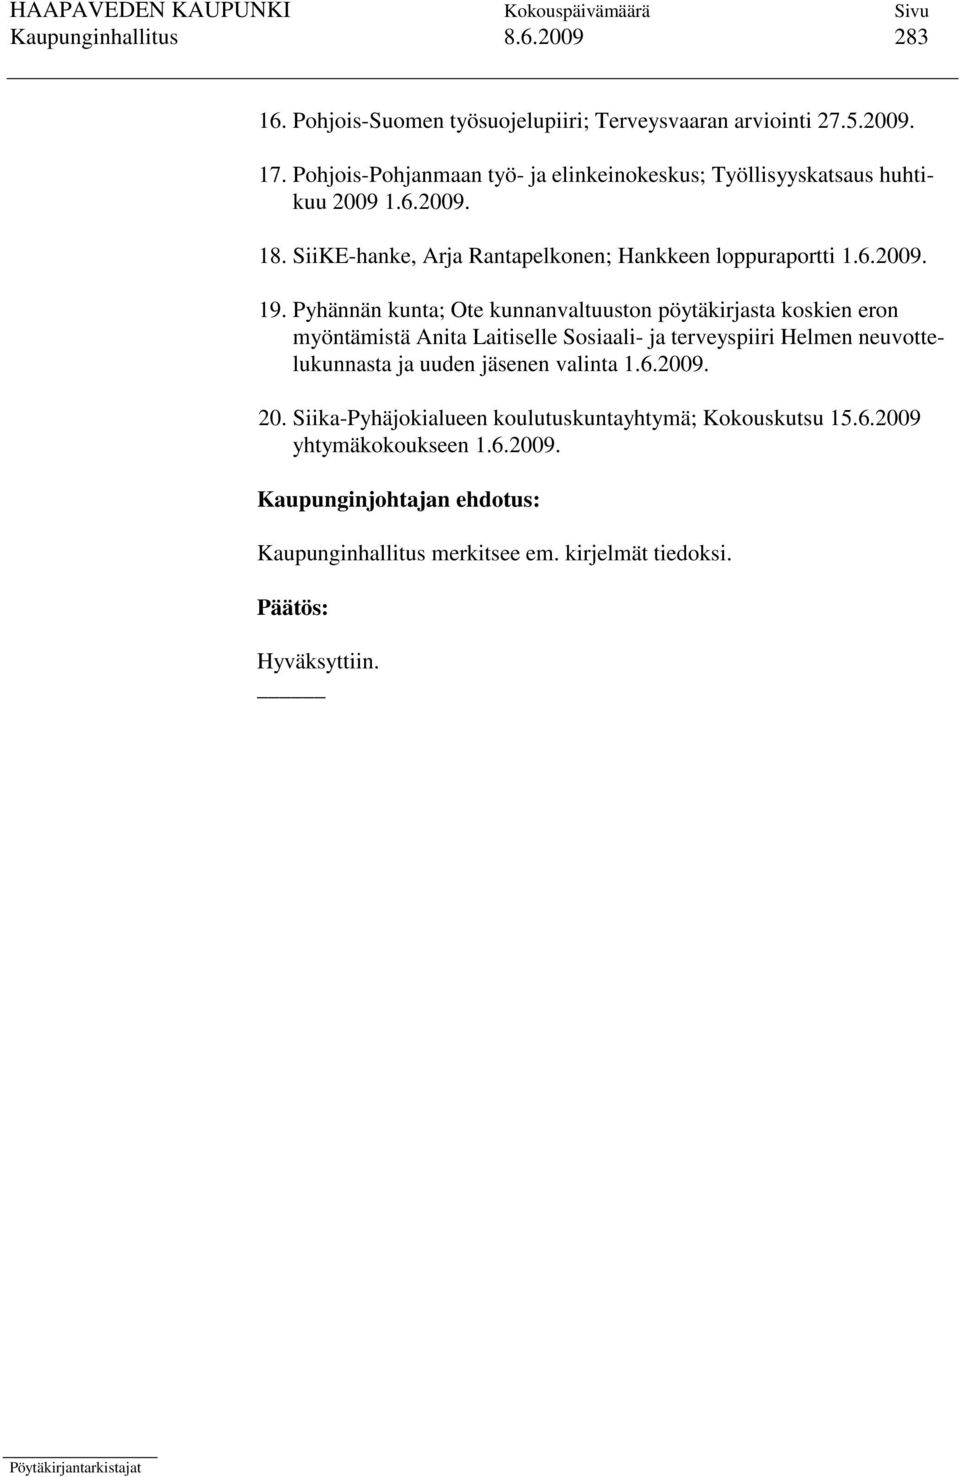 Pyhännän kunta; Ote kunnanvaltuuston pöytäkirjasta koskien eron myöntämistä Anita Laitiselle Sosiaali- ja terveyspiiri Helmen neuvottelukunnasta ja uuden